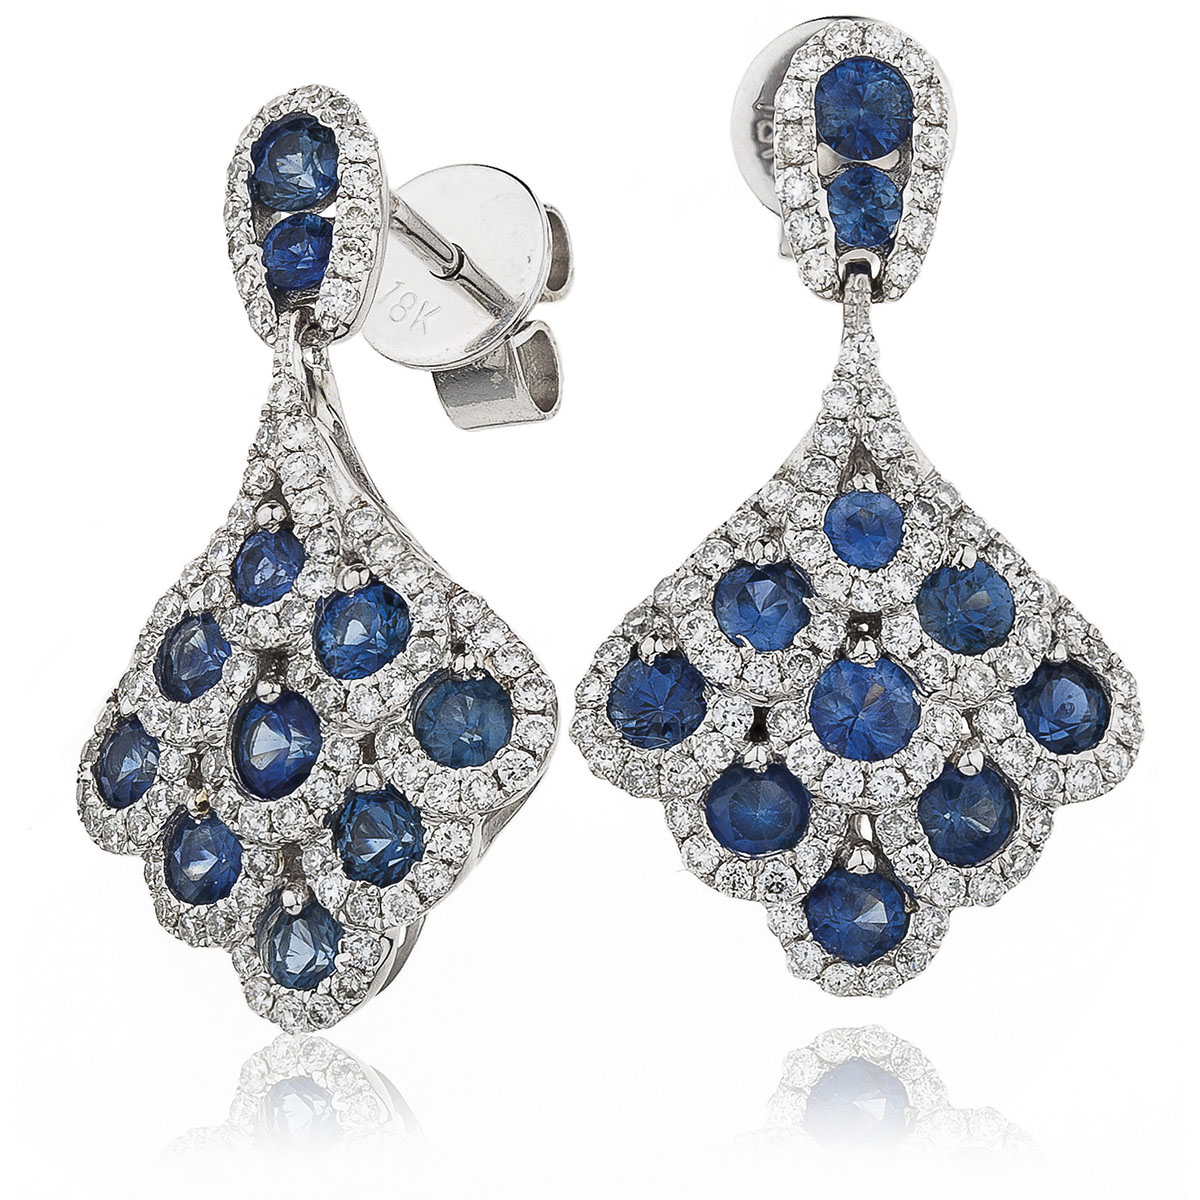 Blue Sapphire cluster drop earrings